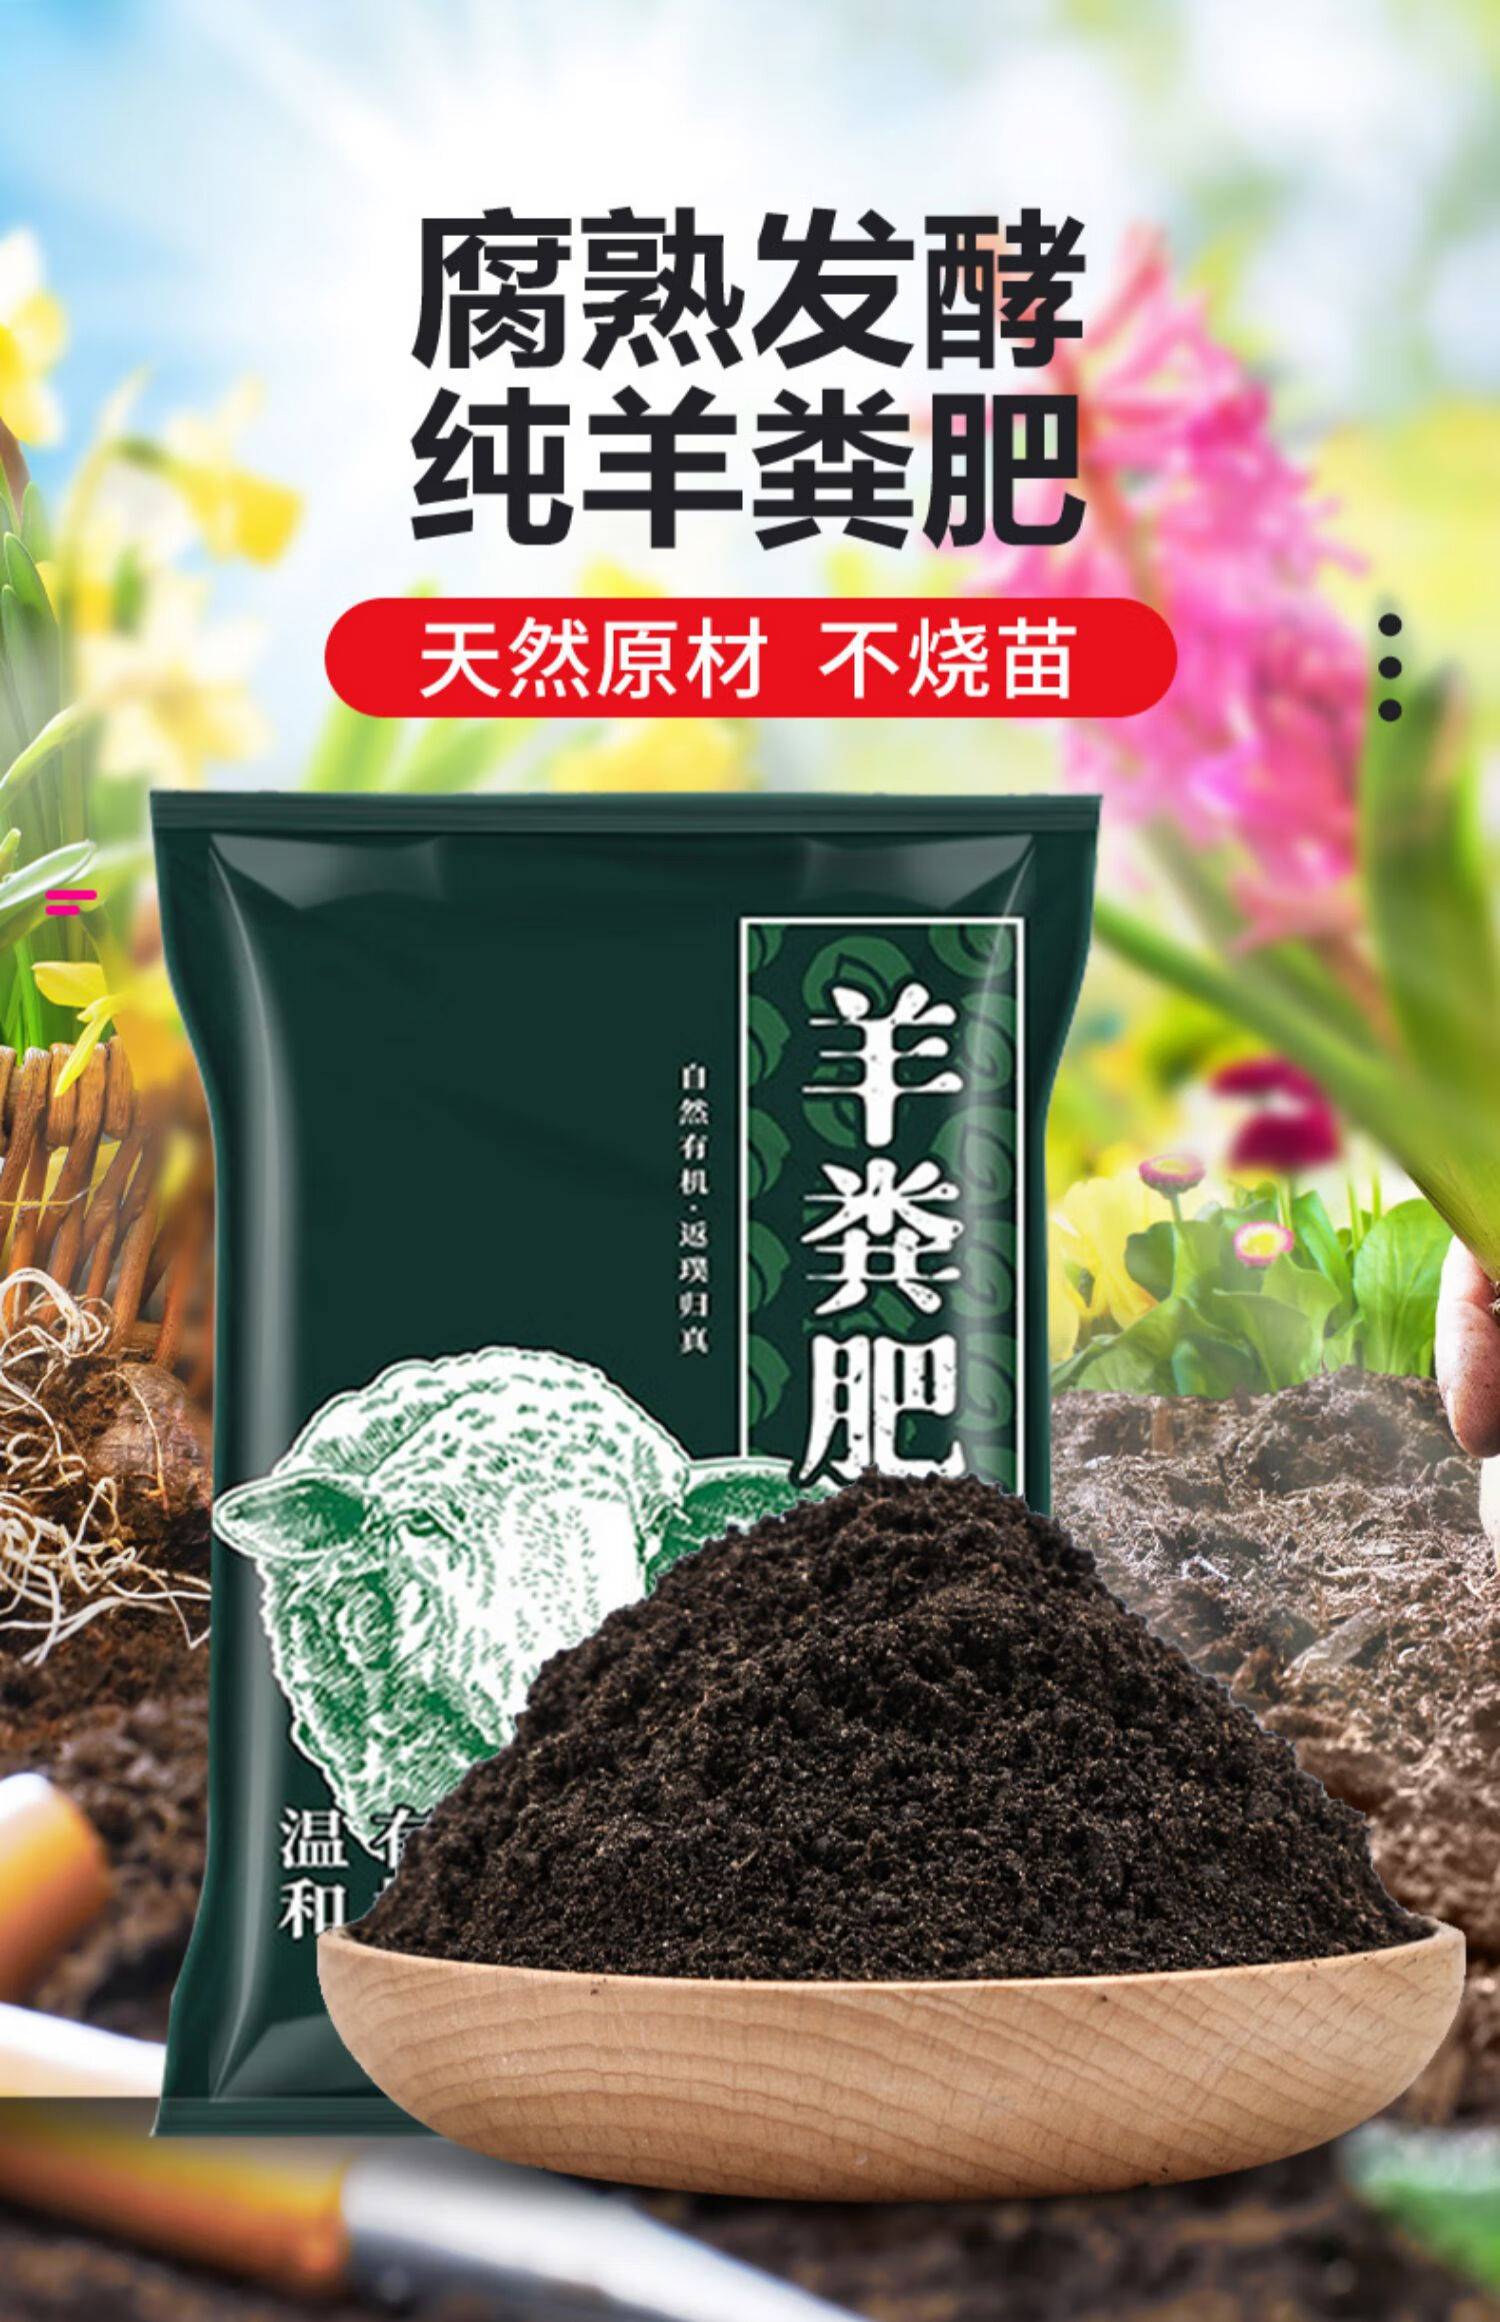 羊粪发酵有机肥内蒙古腐熟鸡粪肥植物通用农家肥绿植花卉专用肥料 30